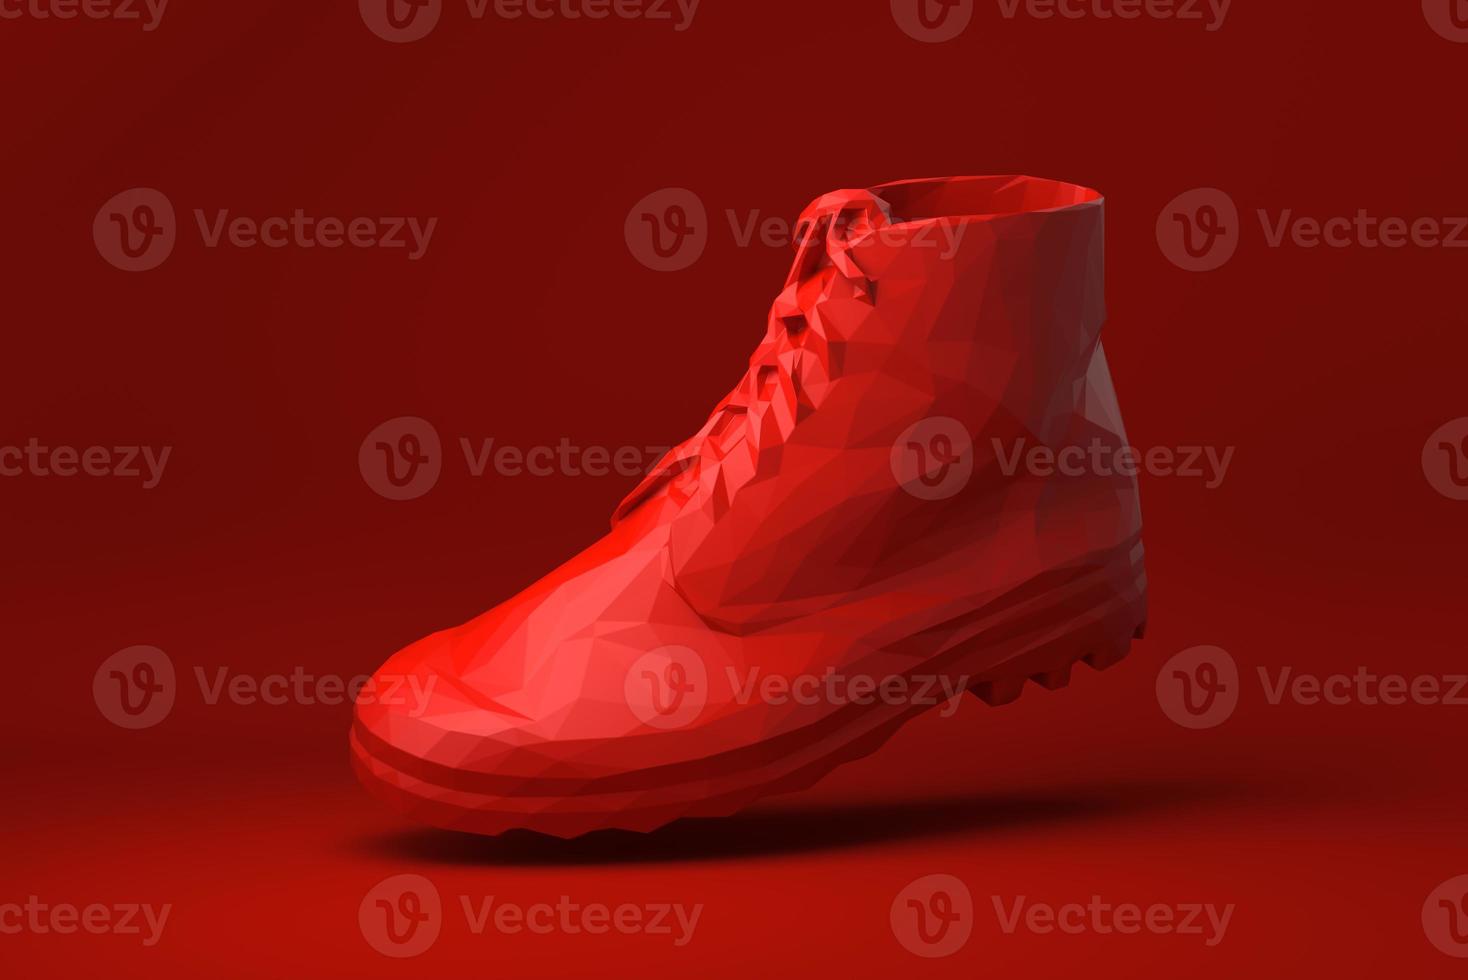 rode schoen drijvend op rode achtergrond. minimaal concept idee creatief. origami-stijl. 3D render. foto